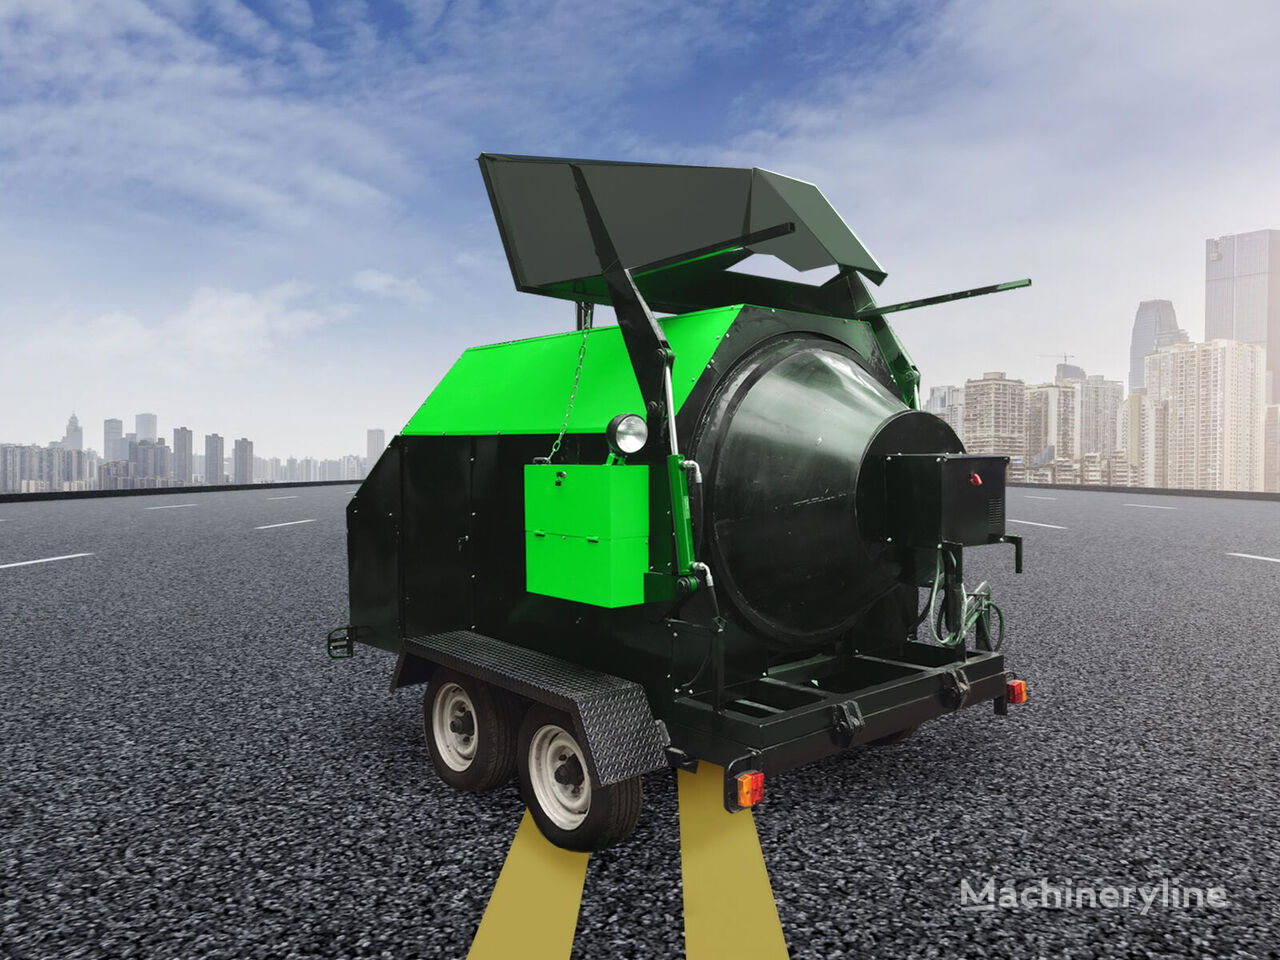 recicladora de asfalto e betão Ticab Asphalt Recycler RA-800 Recykler do Asfaltu Miniasfaltownia novo